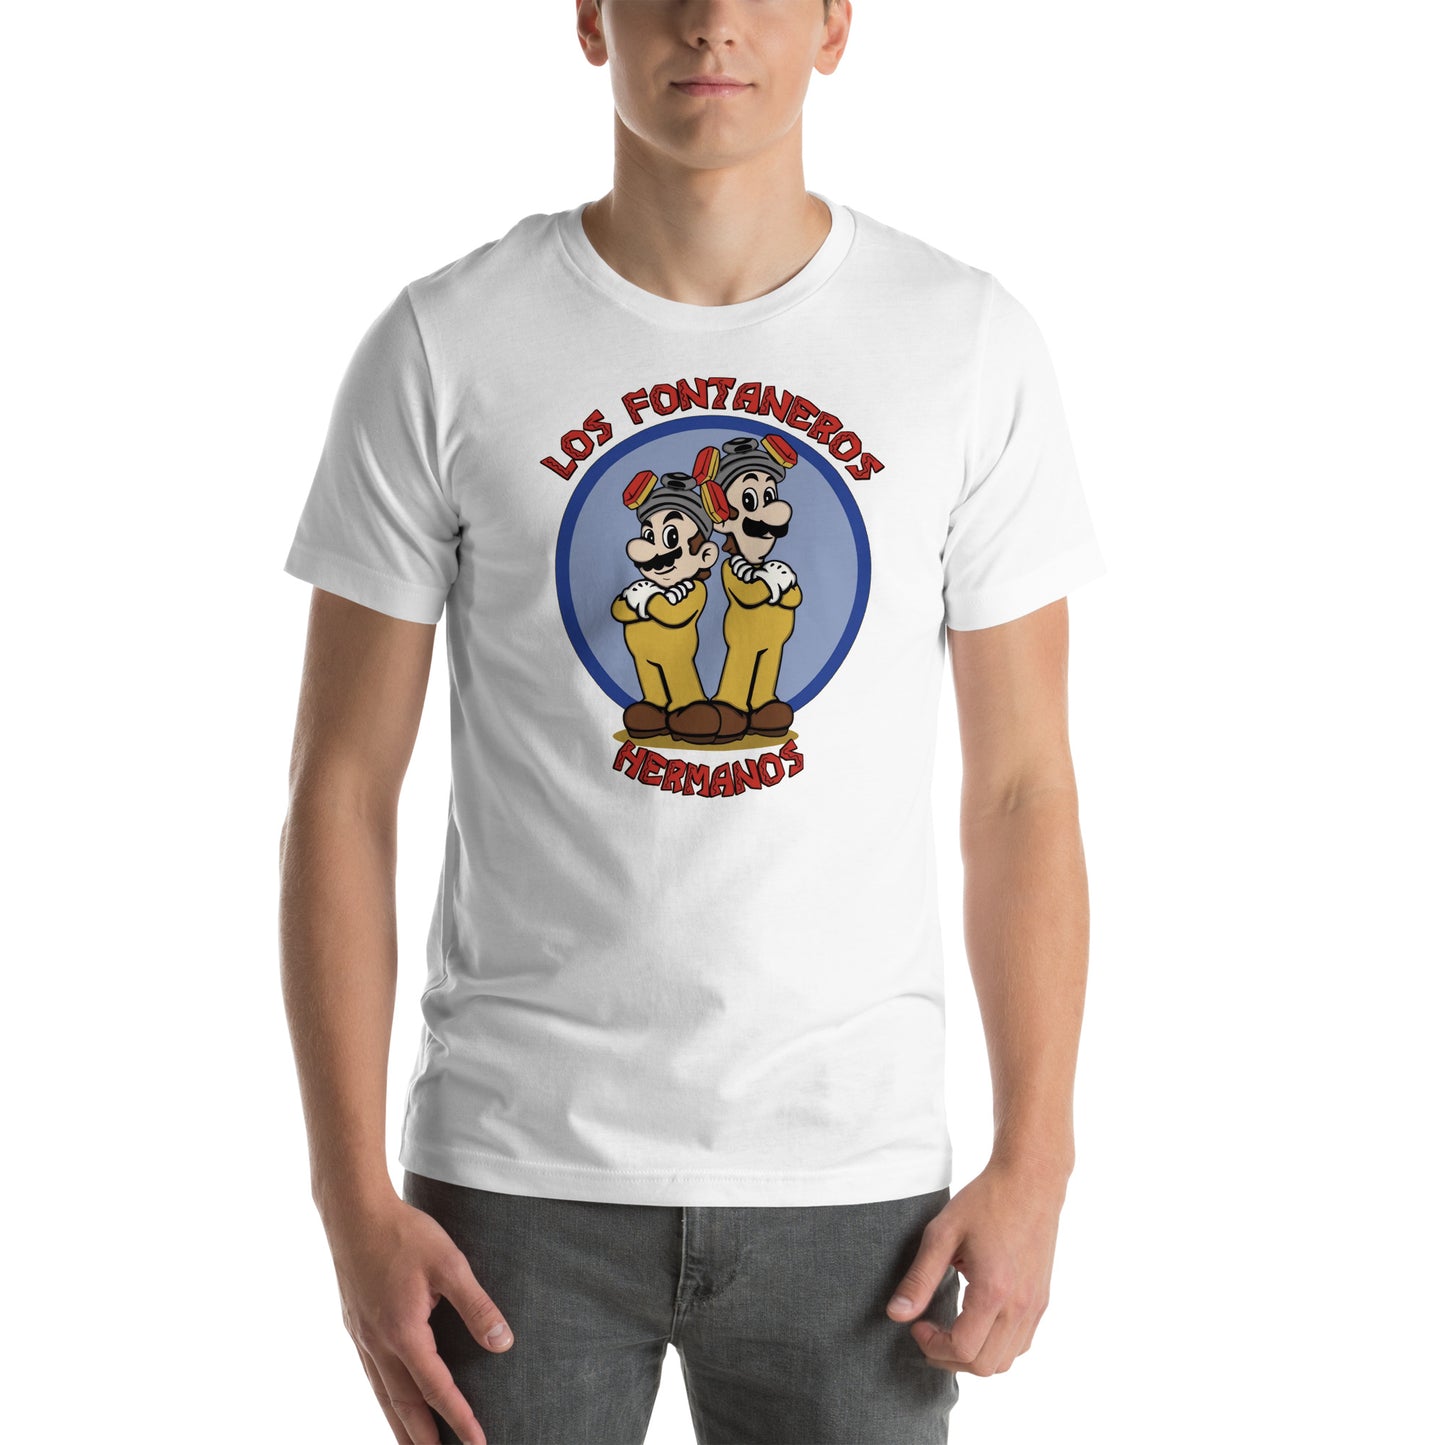 Camiseta Los Fontaneros Hermanos, Disponible en la mejor tienda online para comprar tu merch favorita, la mejor Calidad, compra Ahora en Superstar! 